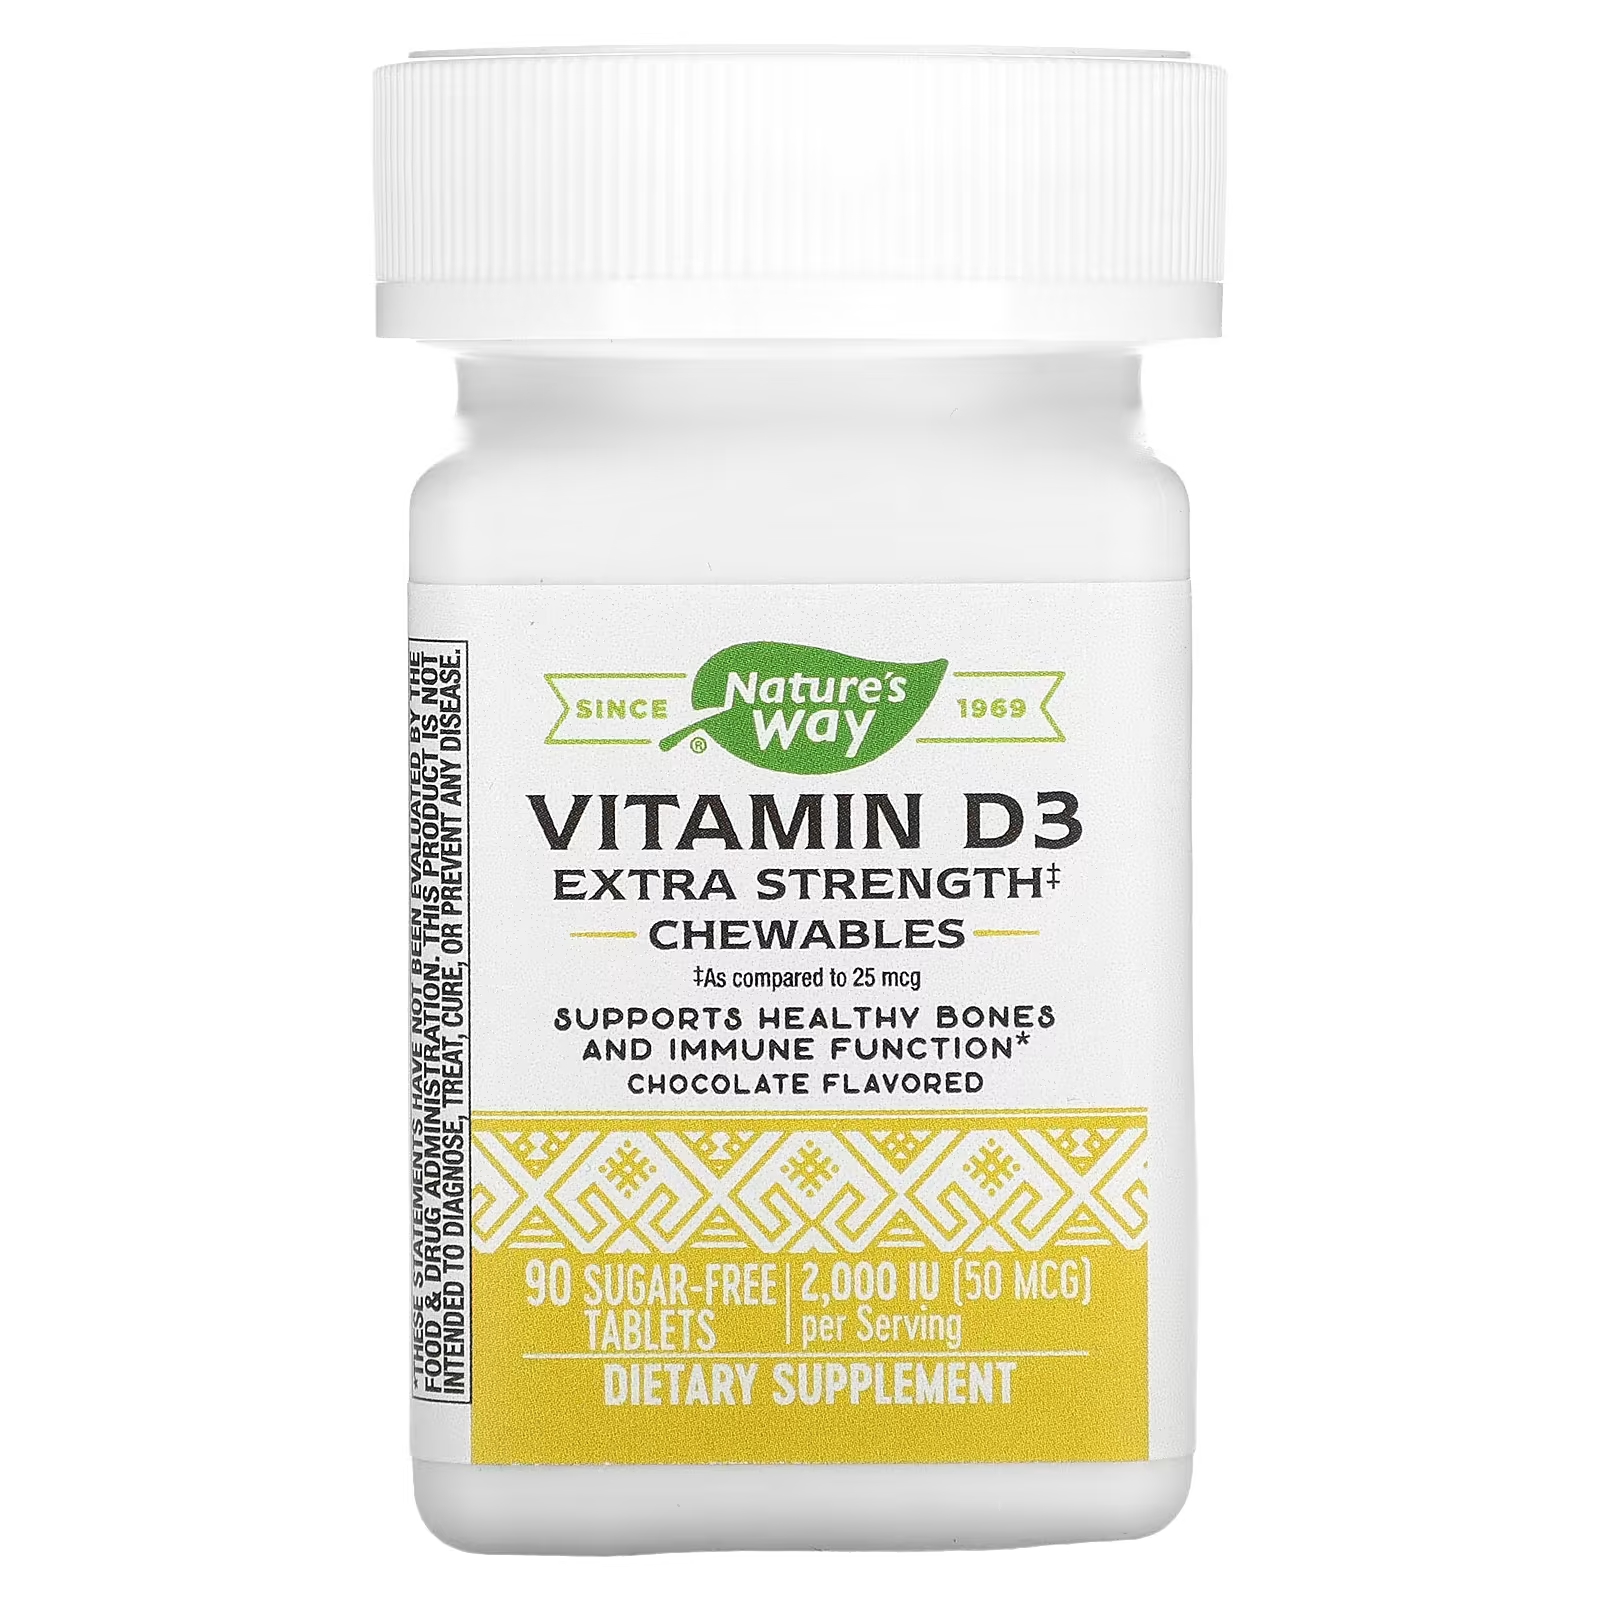 Витамин D3 повышенной прочности Nature's Way в шоколаде, 90 таблеток